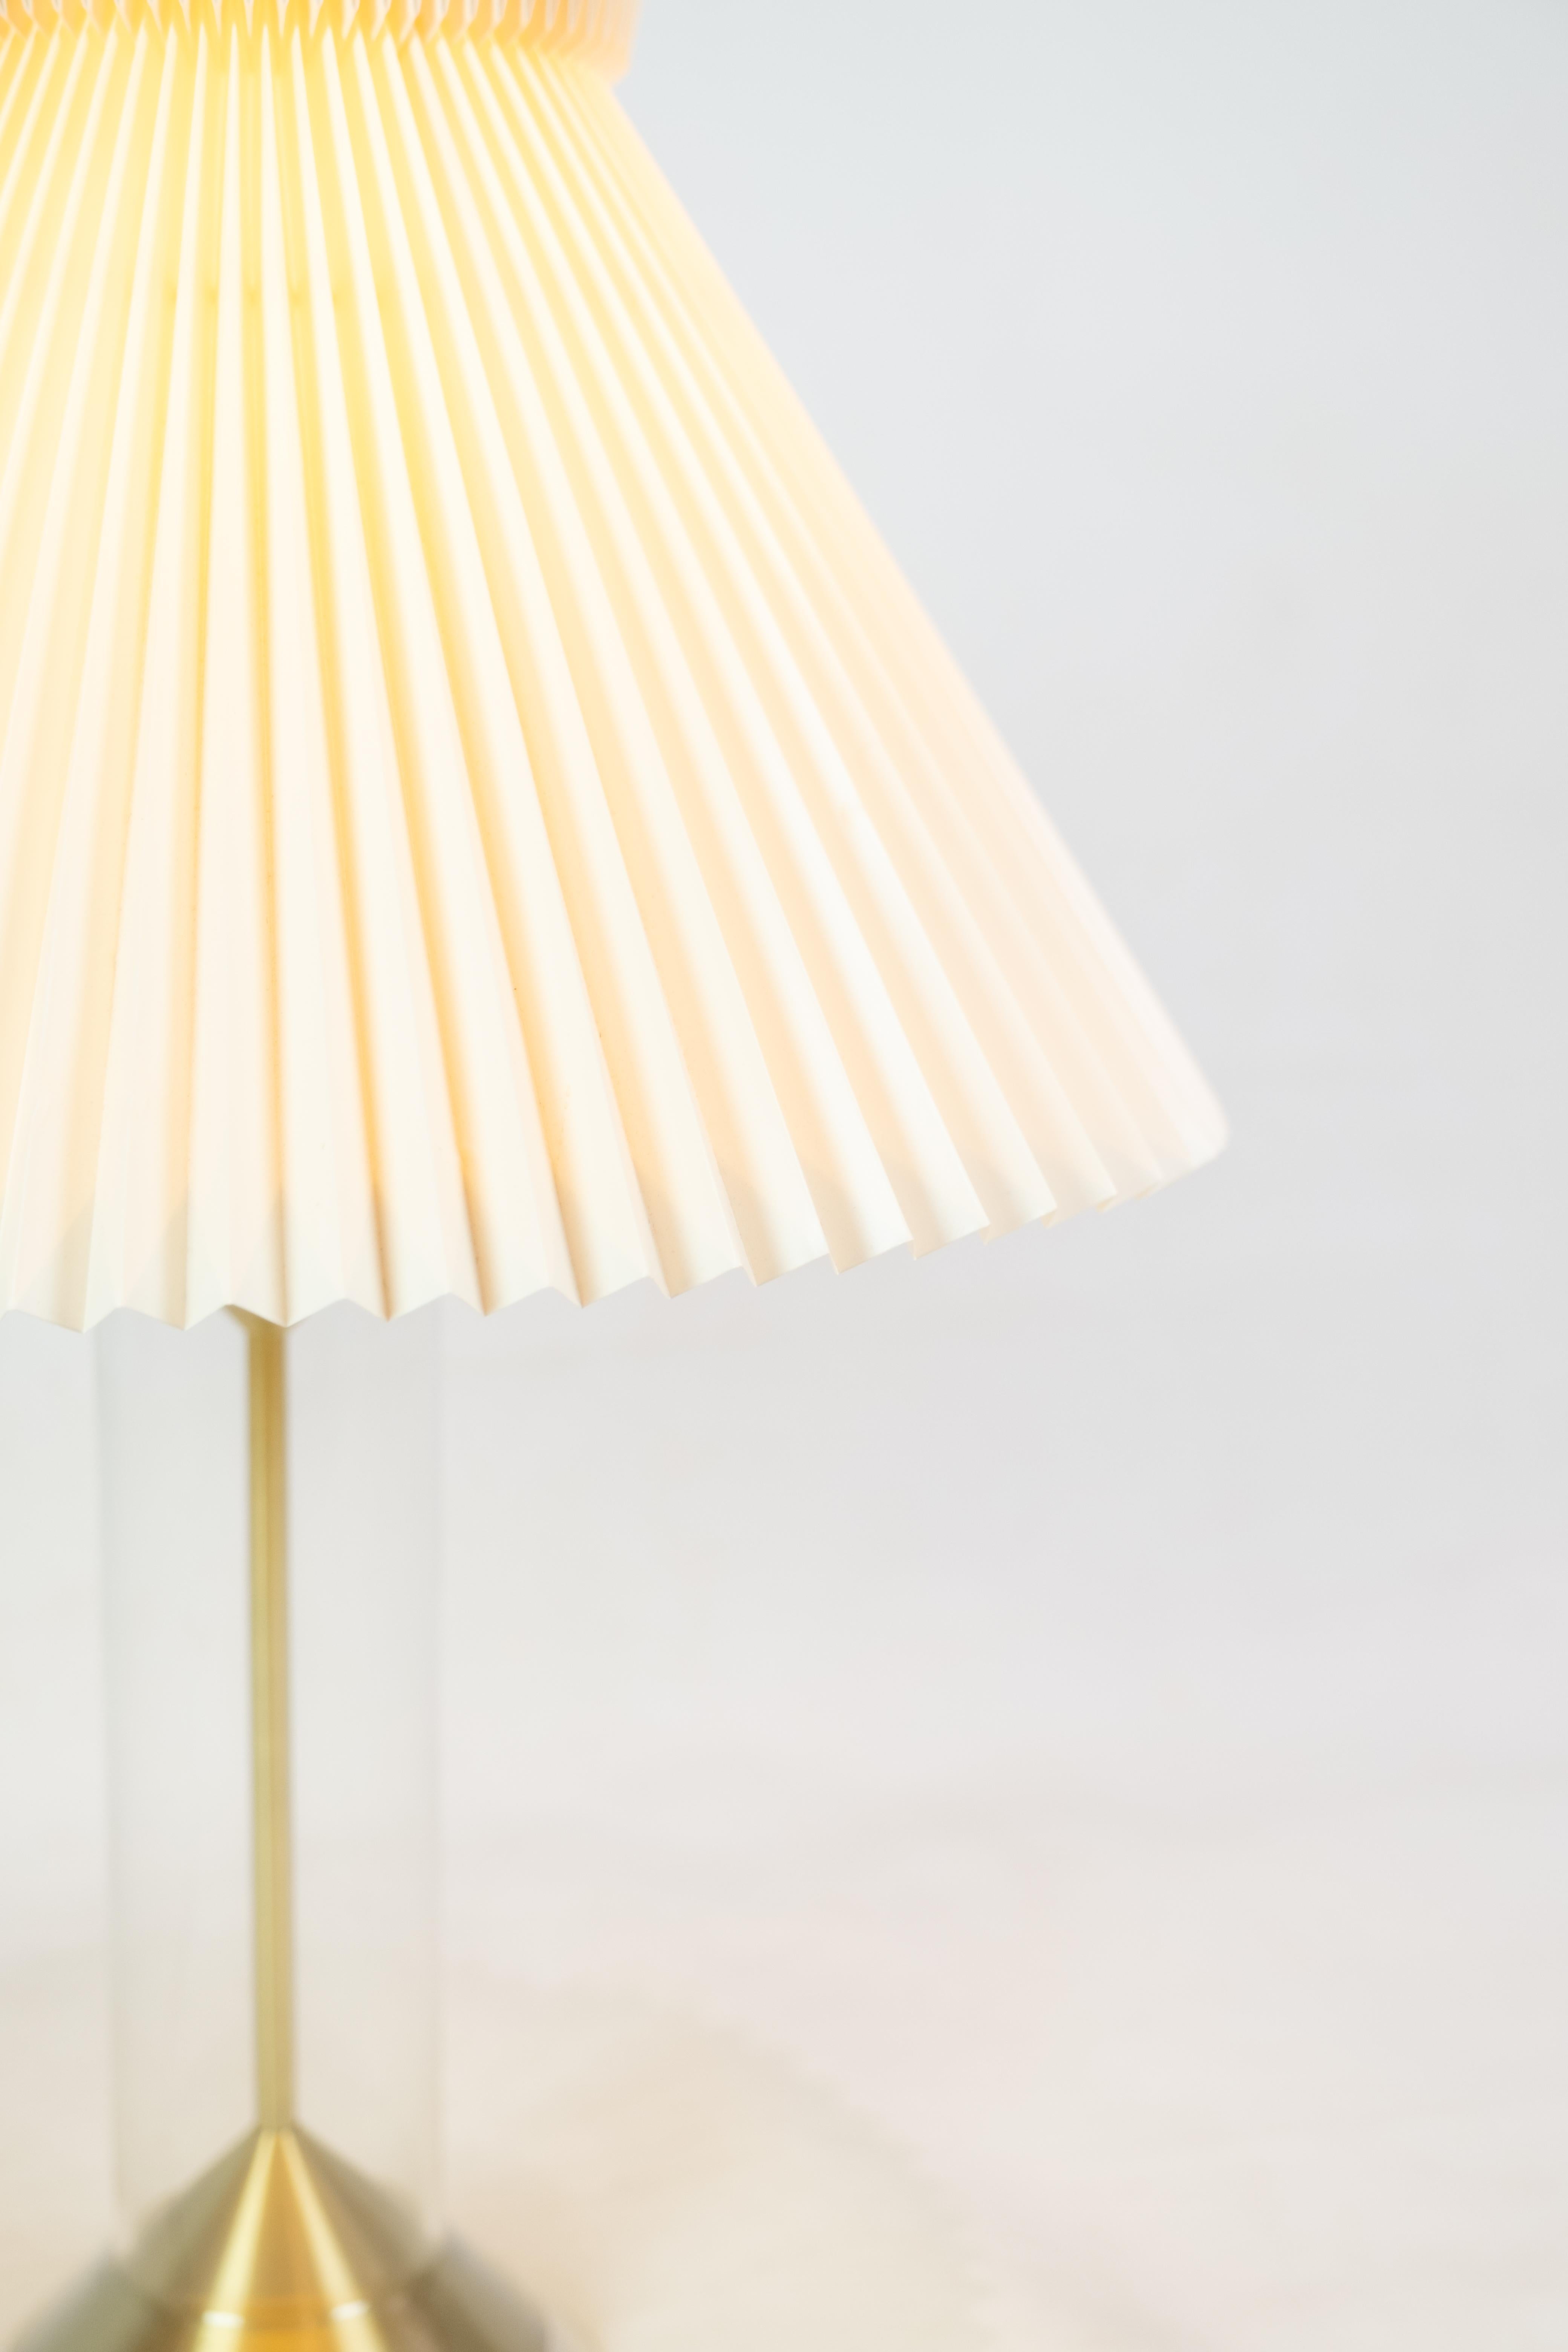 La lampe de table en laiton, modèle 303b, est un magnifique design d'Aage Petersen pour Le Klint, qui allie élégance et fonctionnalité.

Aage Petersen était un célèbre designer danois connu pour ses designs de lampes innovants, et sa Collaboration